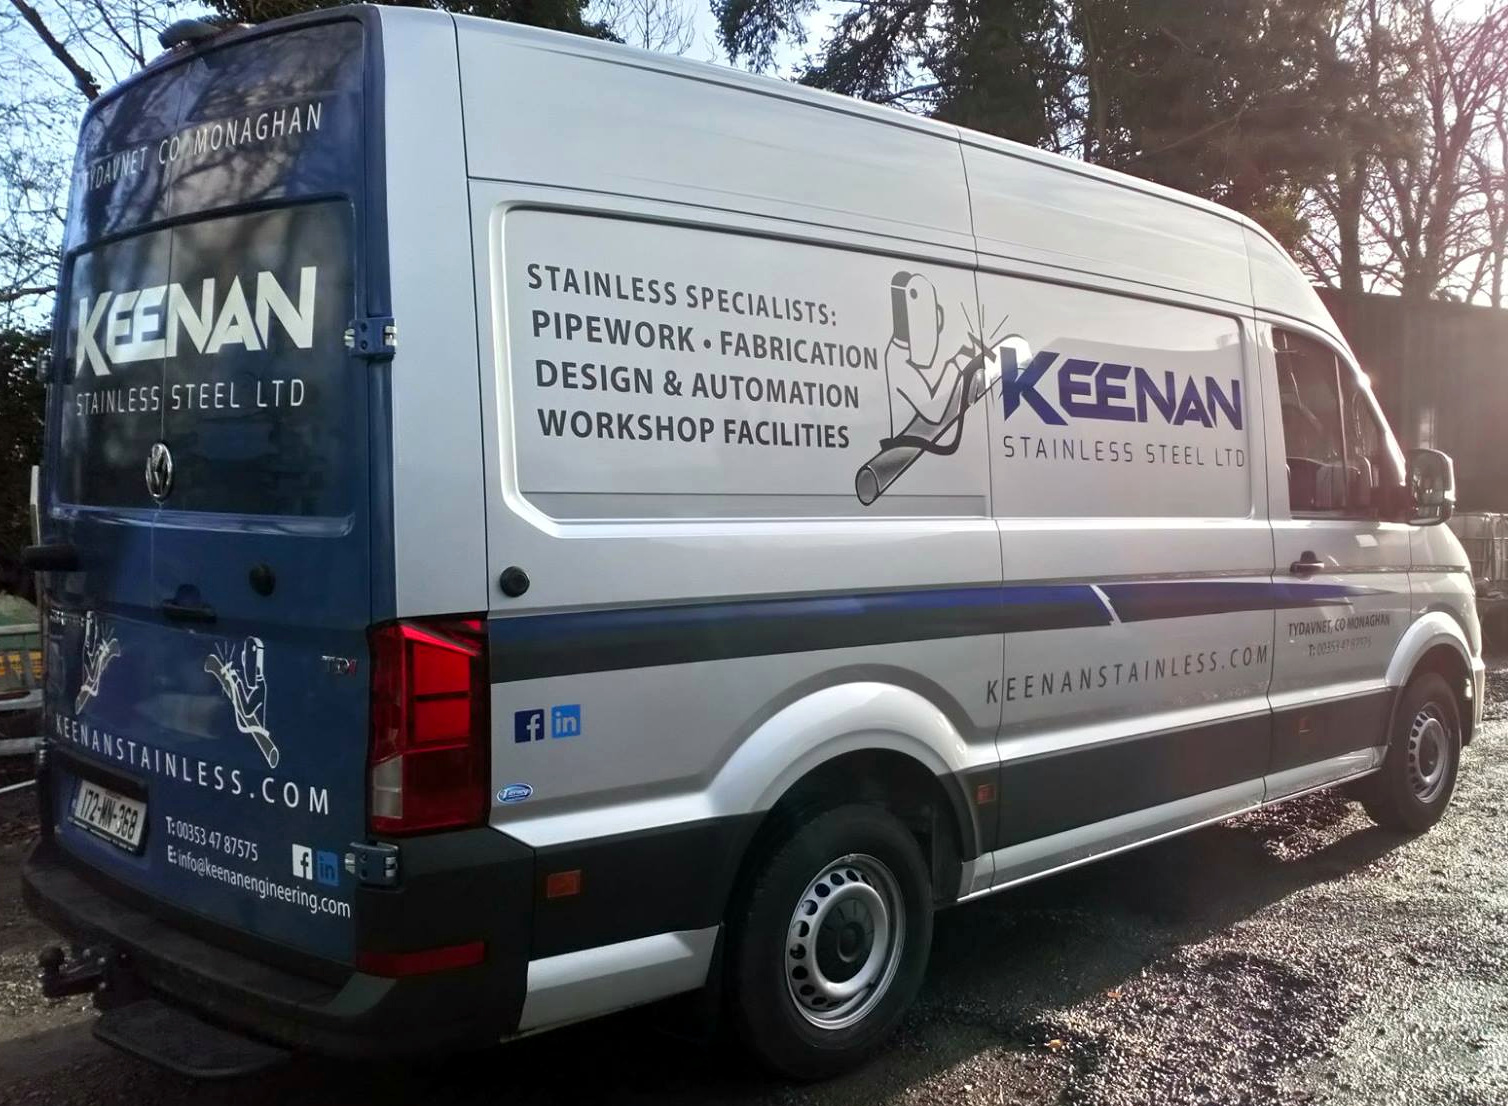 Keenan Stainless Steel